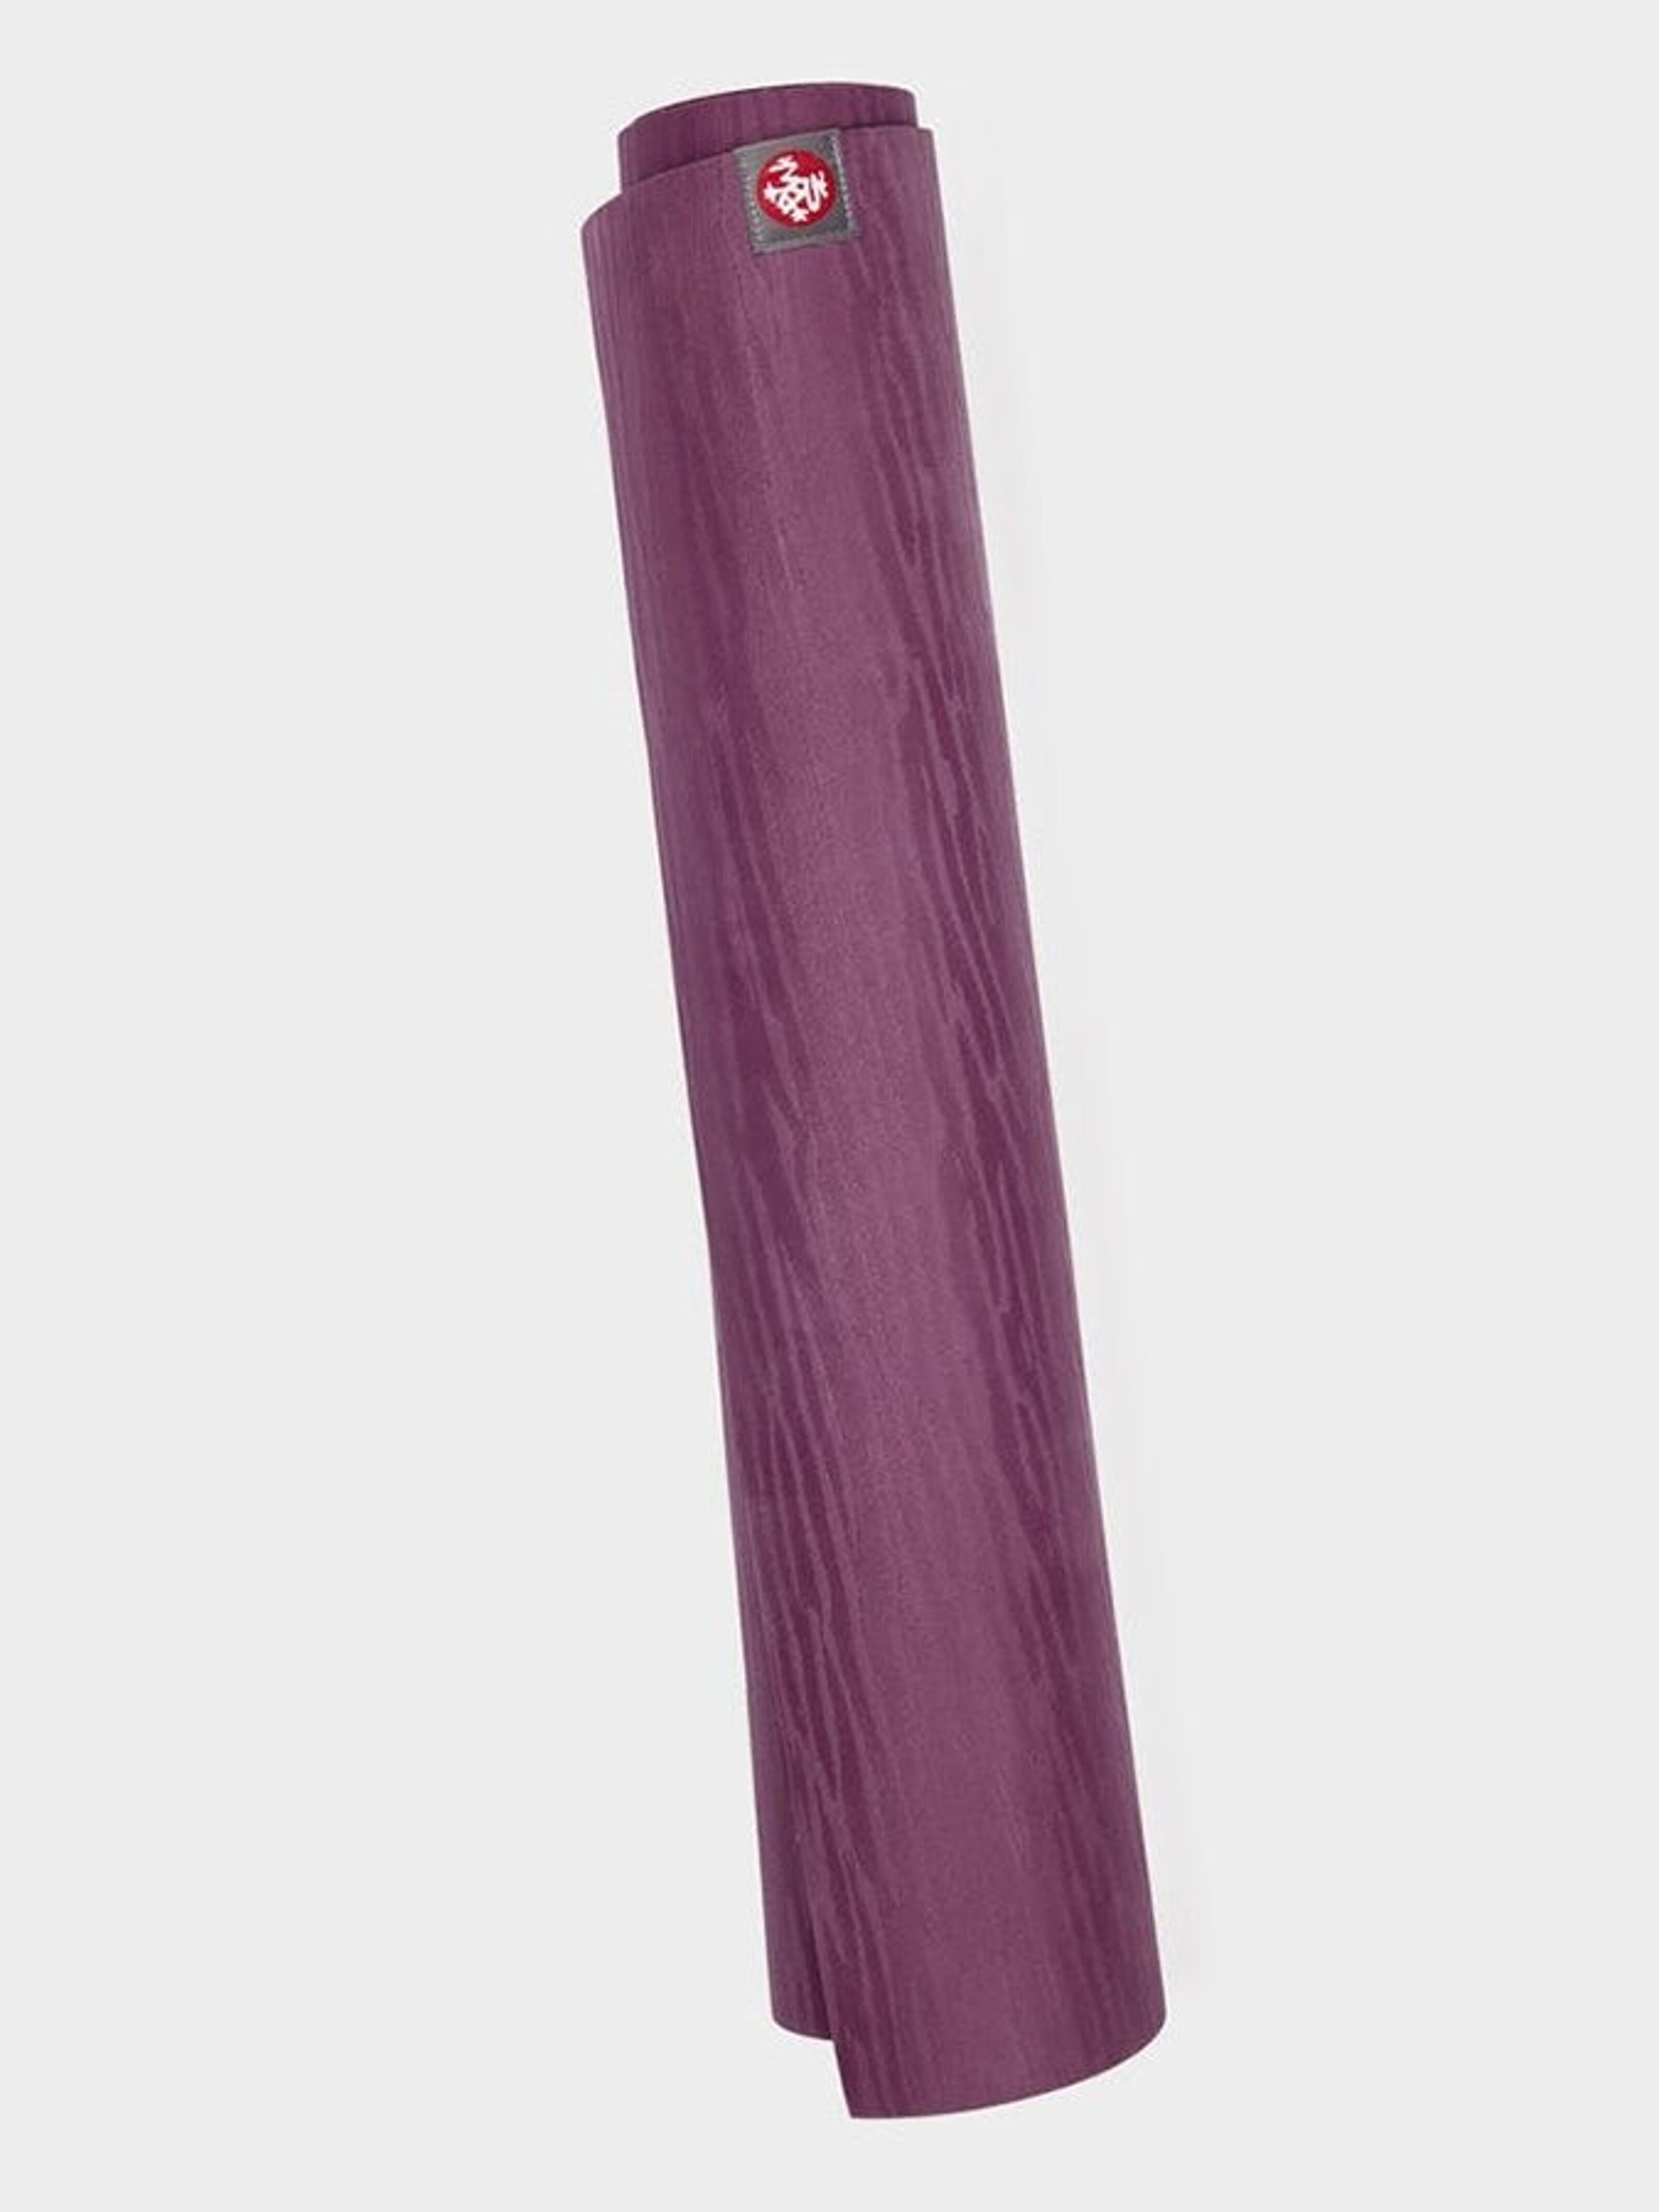 Wholesale - Manduka eKO Lite 79 Long Yoga Mat 4mm – Yoga Studio Wholesale